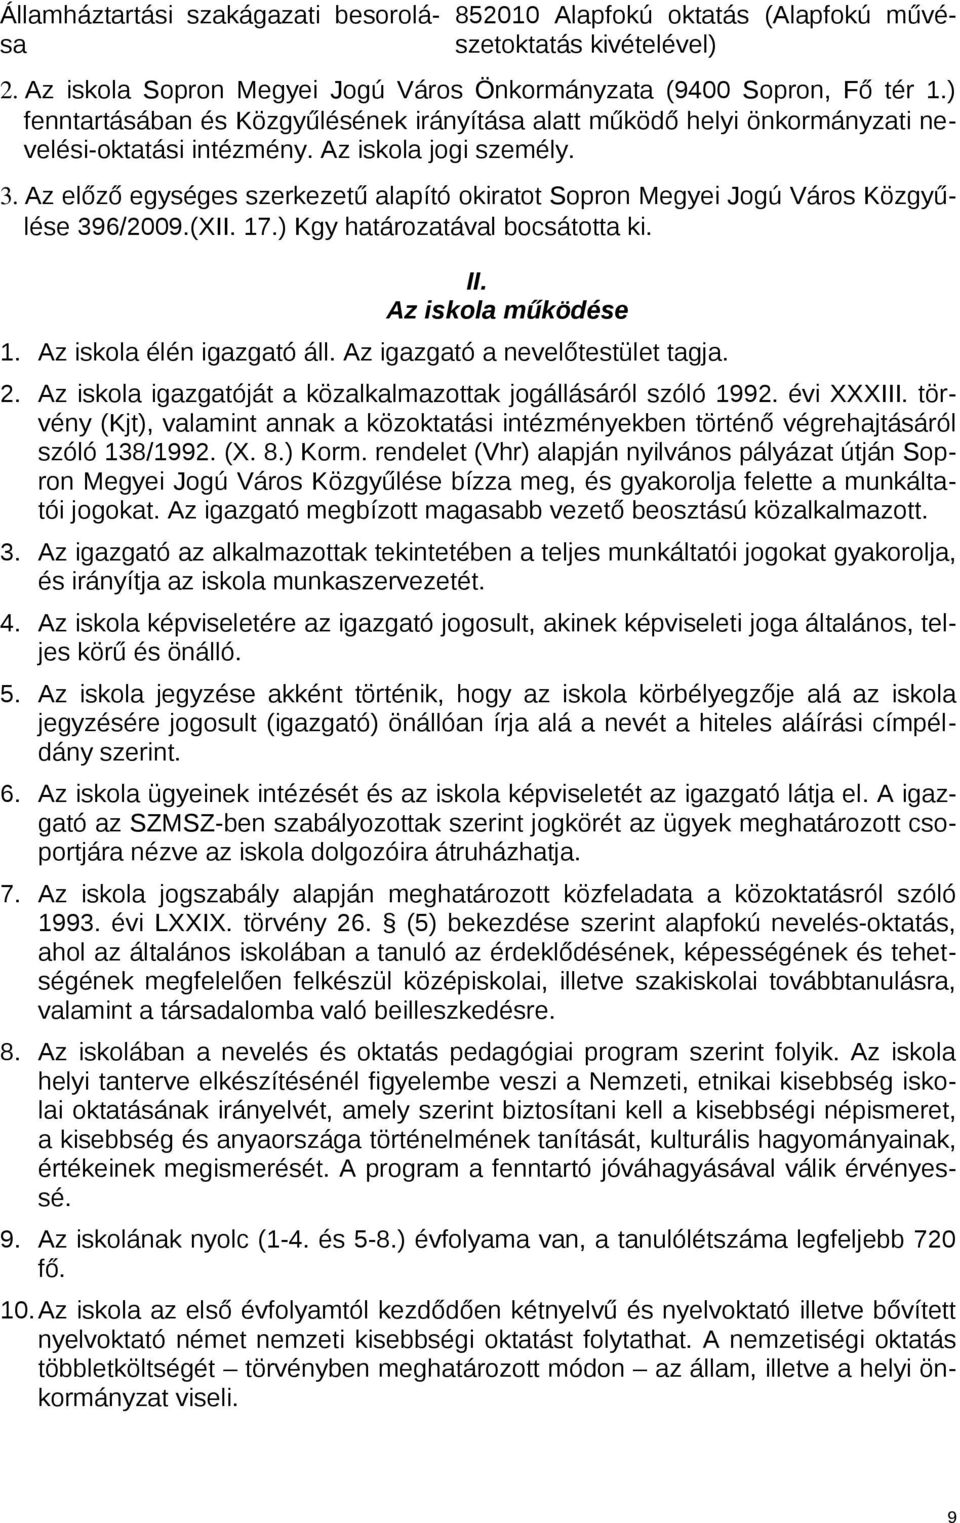 Az előző egységes szerkezetű alapító okiratot Sopron Megyei Jogú Város Közgyűlése 396/2009.(XII. 17.) Kgy határozatával bocsátotta ki. II. Az iskola működése 1. Az iskola élén igazgató áll.